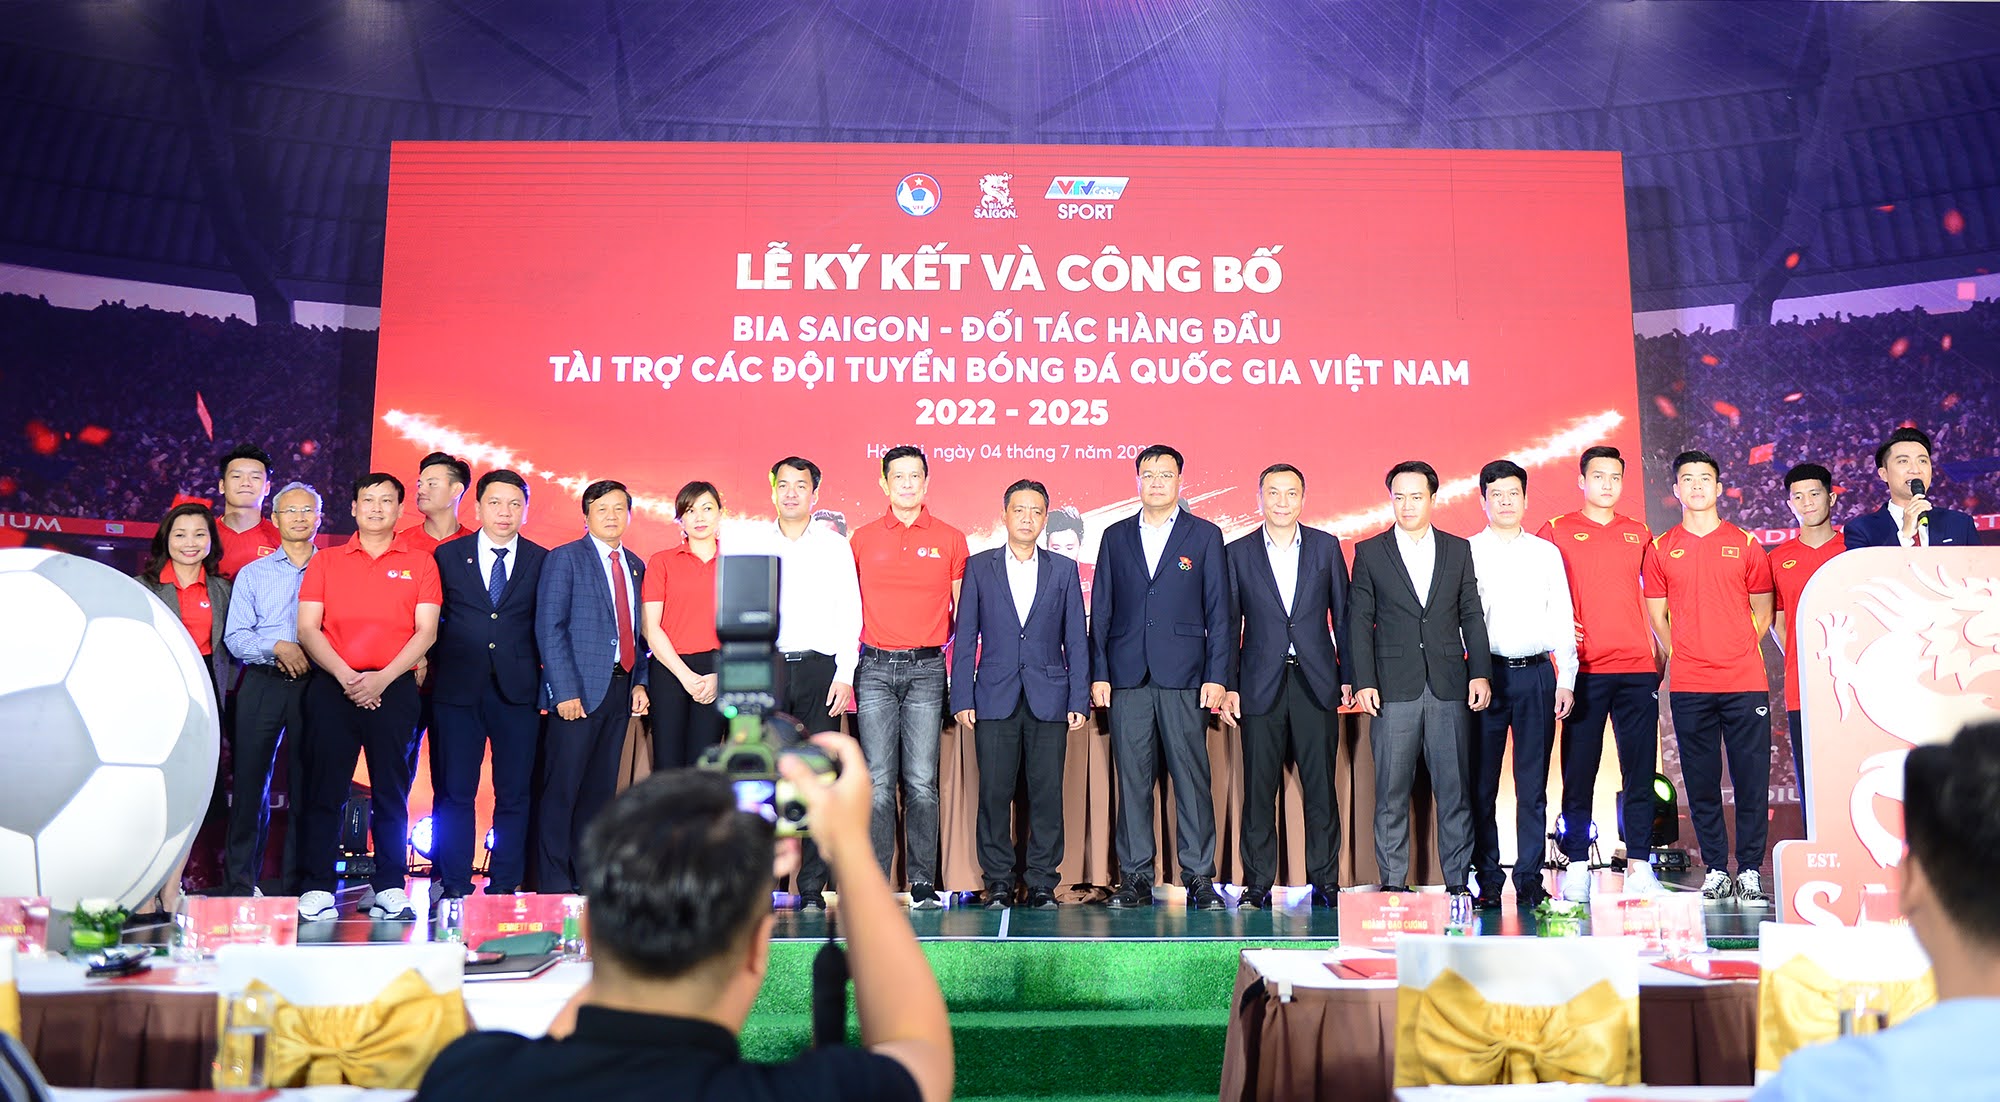 Đình Trọng, Duy Mạnh chứng kiến ĐT Việt Nam nhận tài trợ lớn - Ảnh 1.